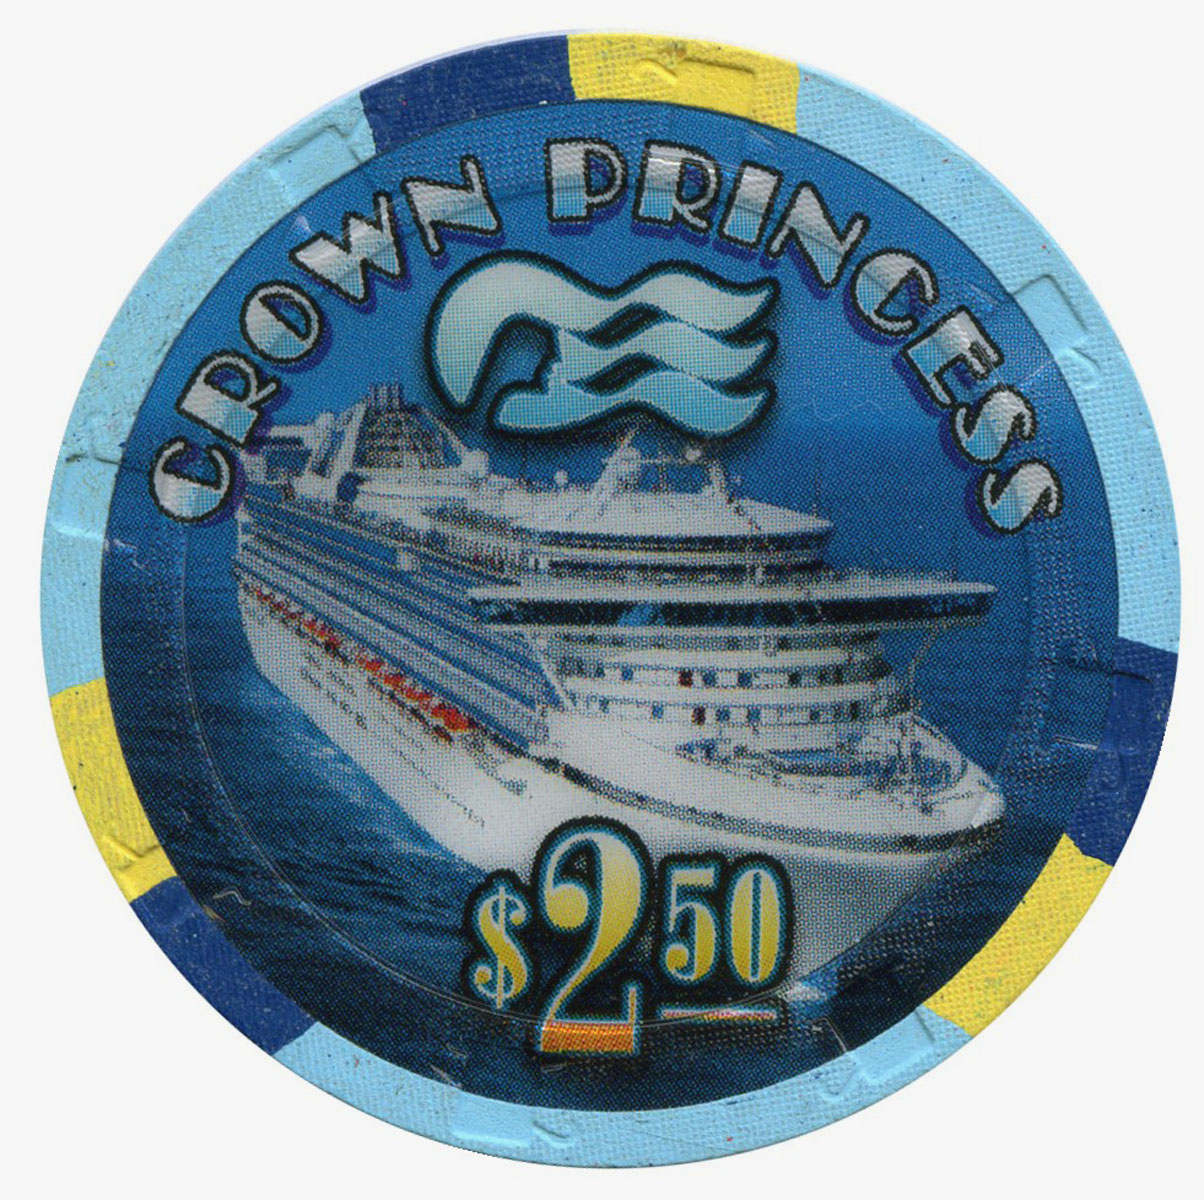 Princess Cruise Line Casino Chip - Chipper Club - Chipper Club